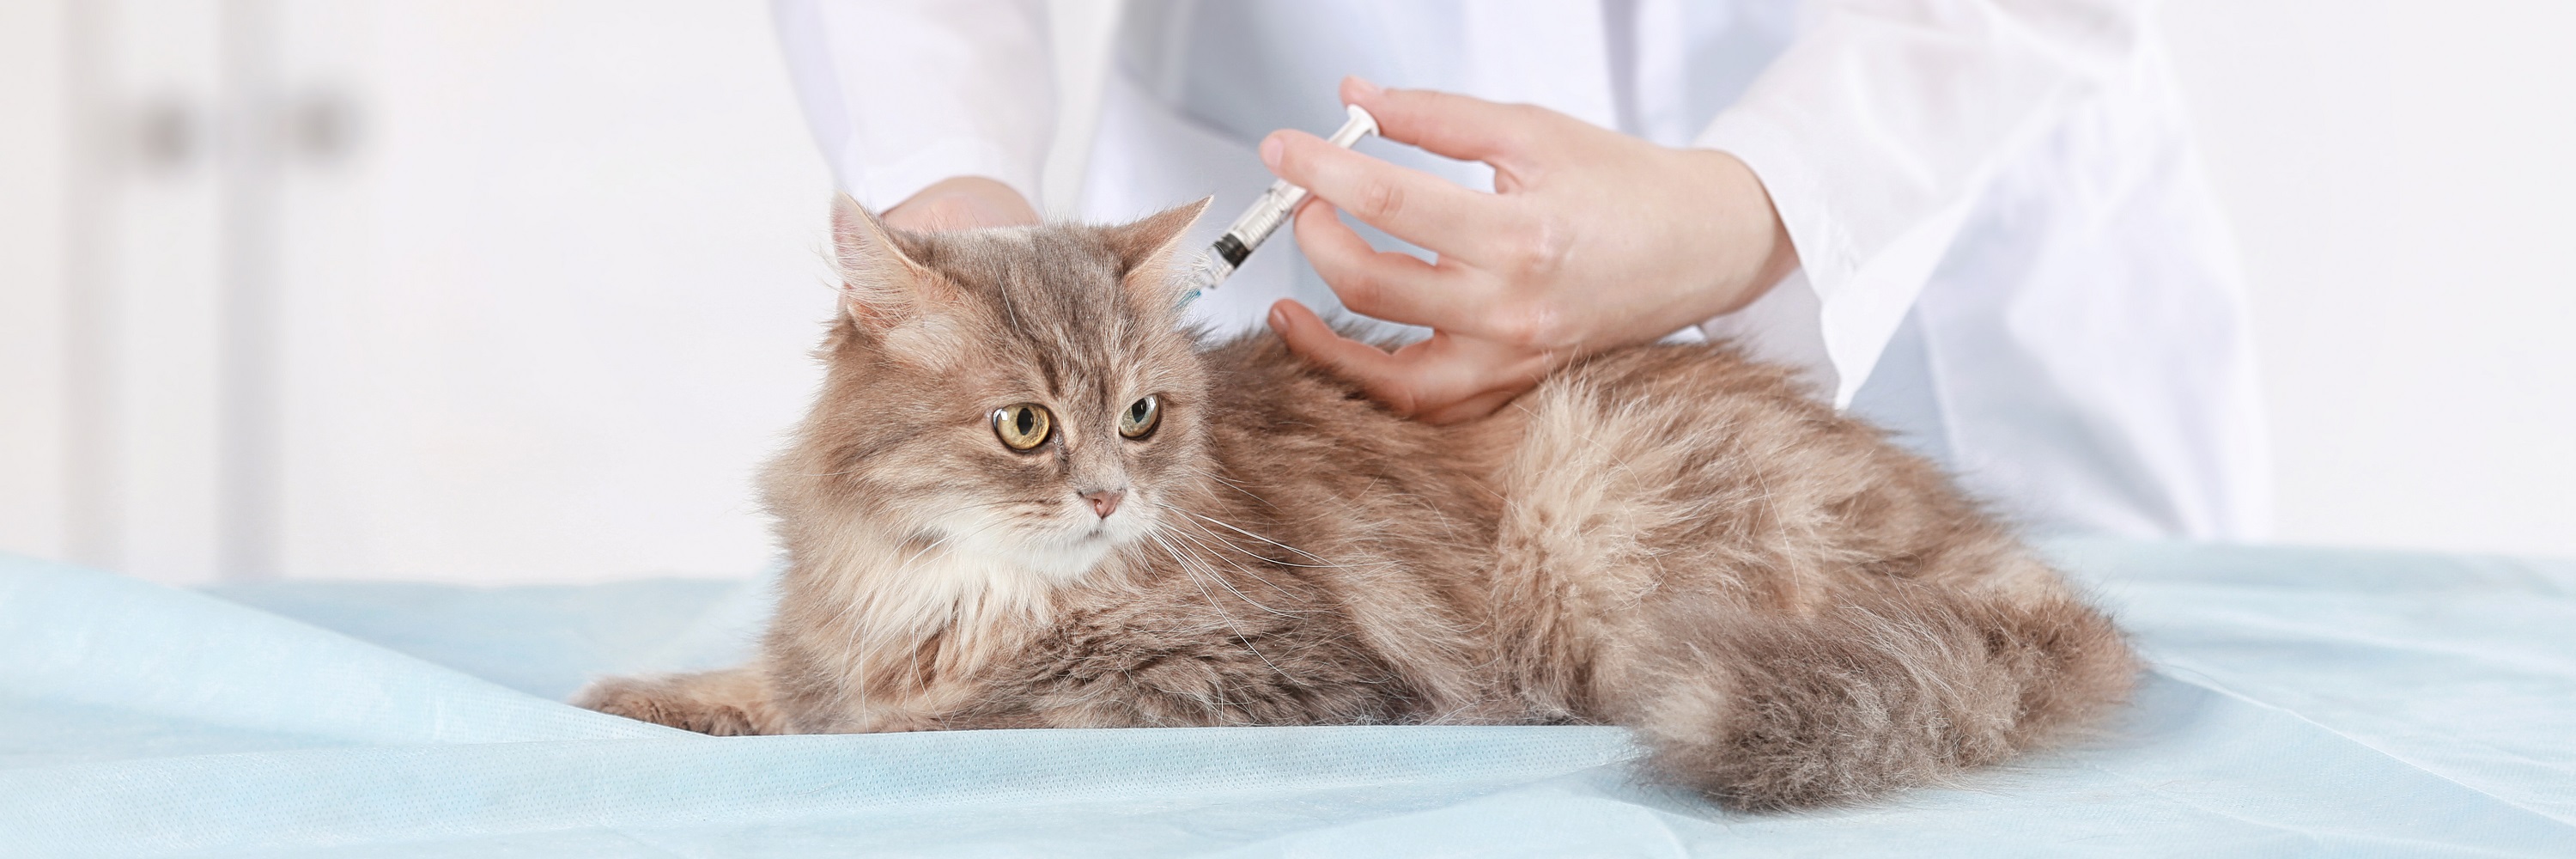 cat vaccinations australia